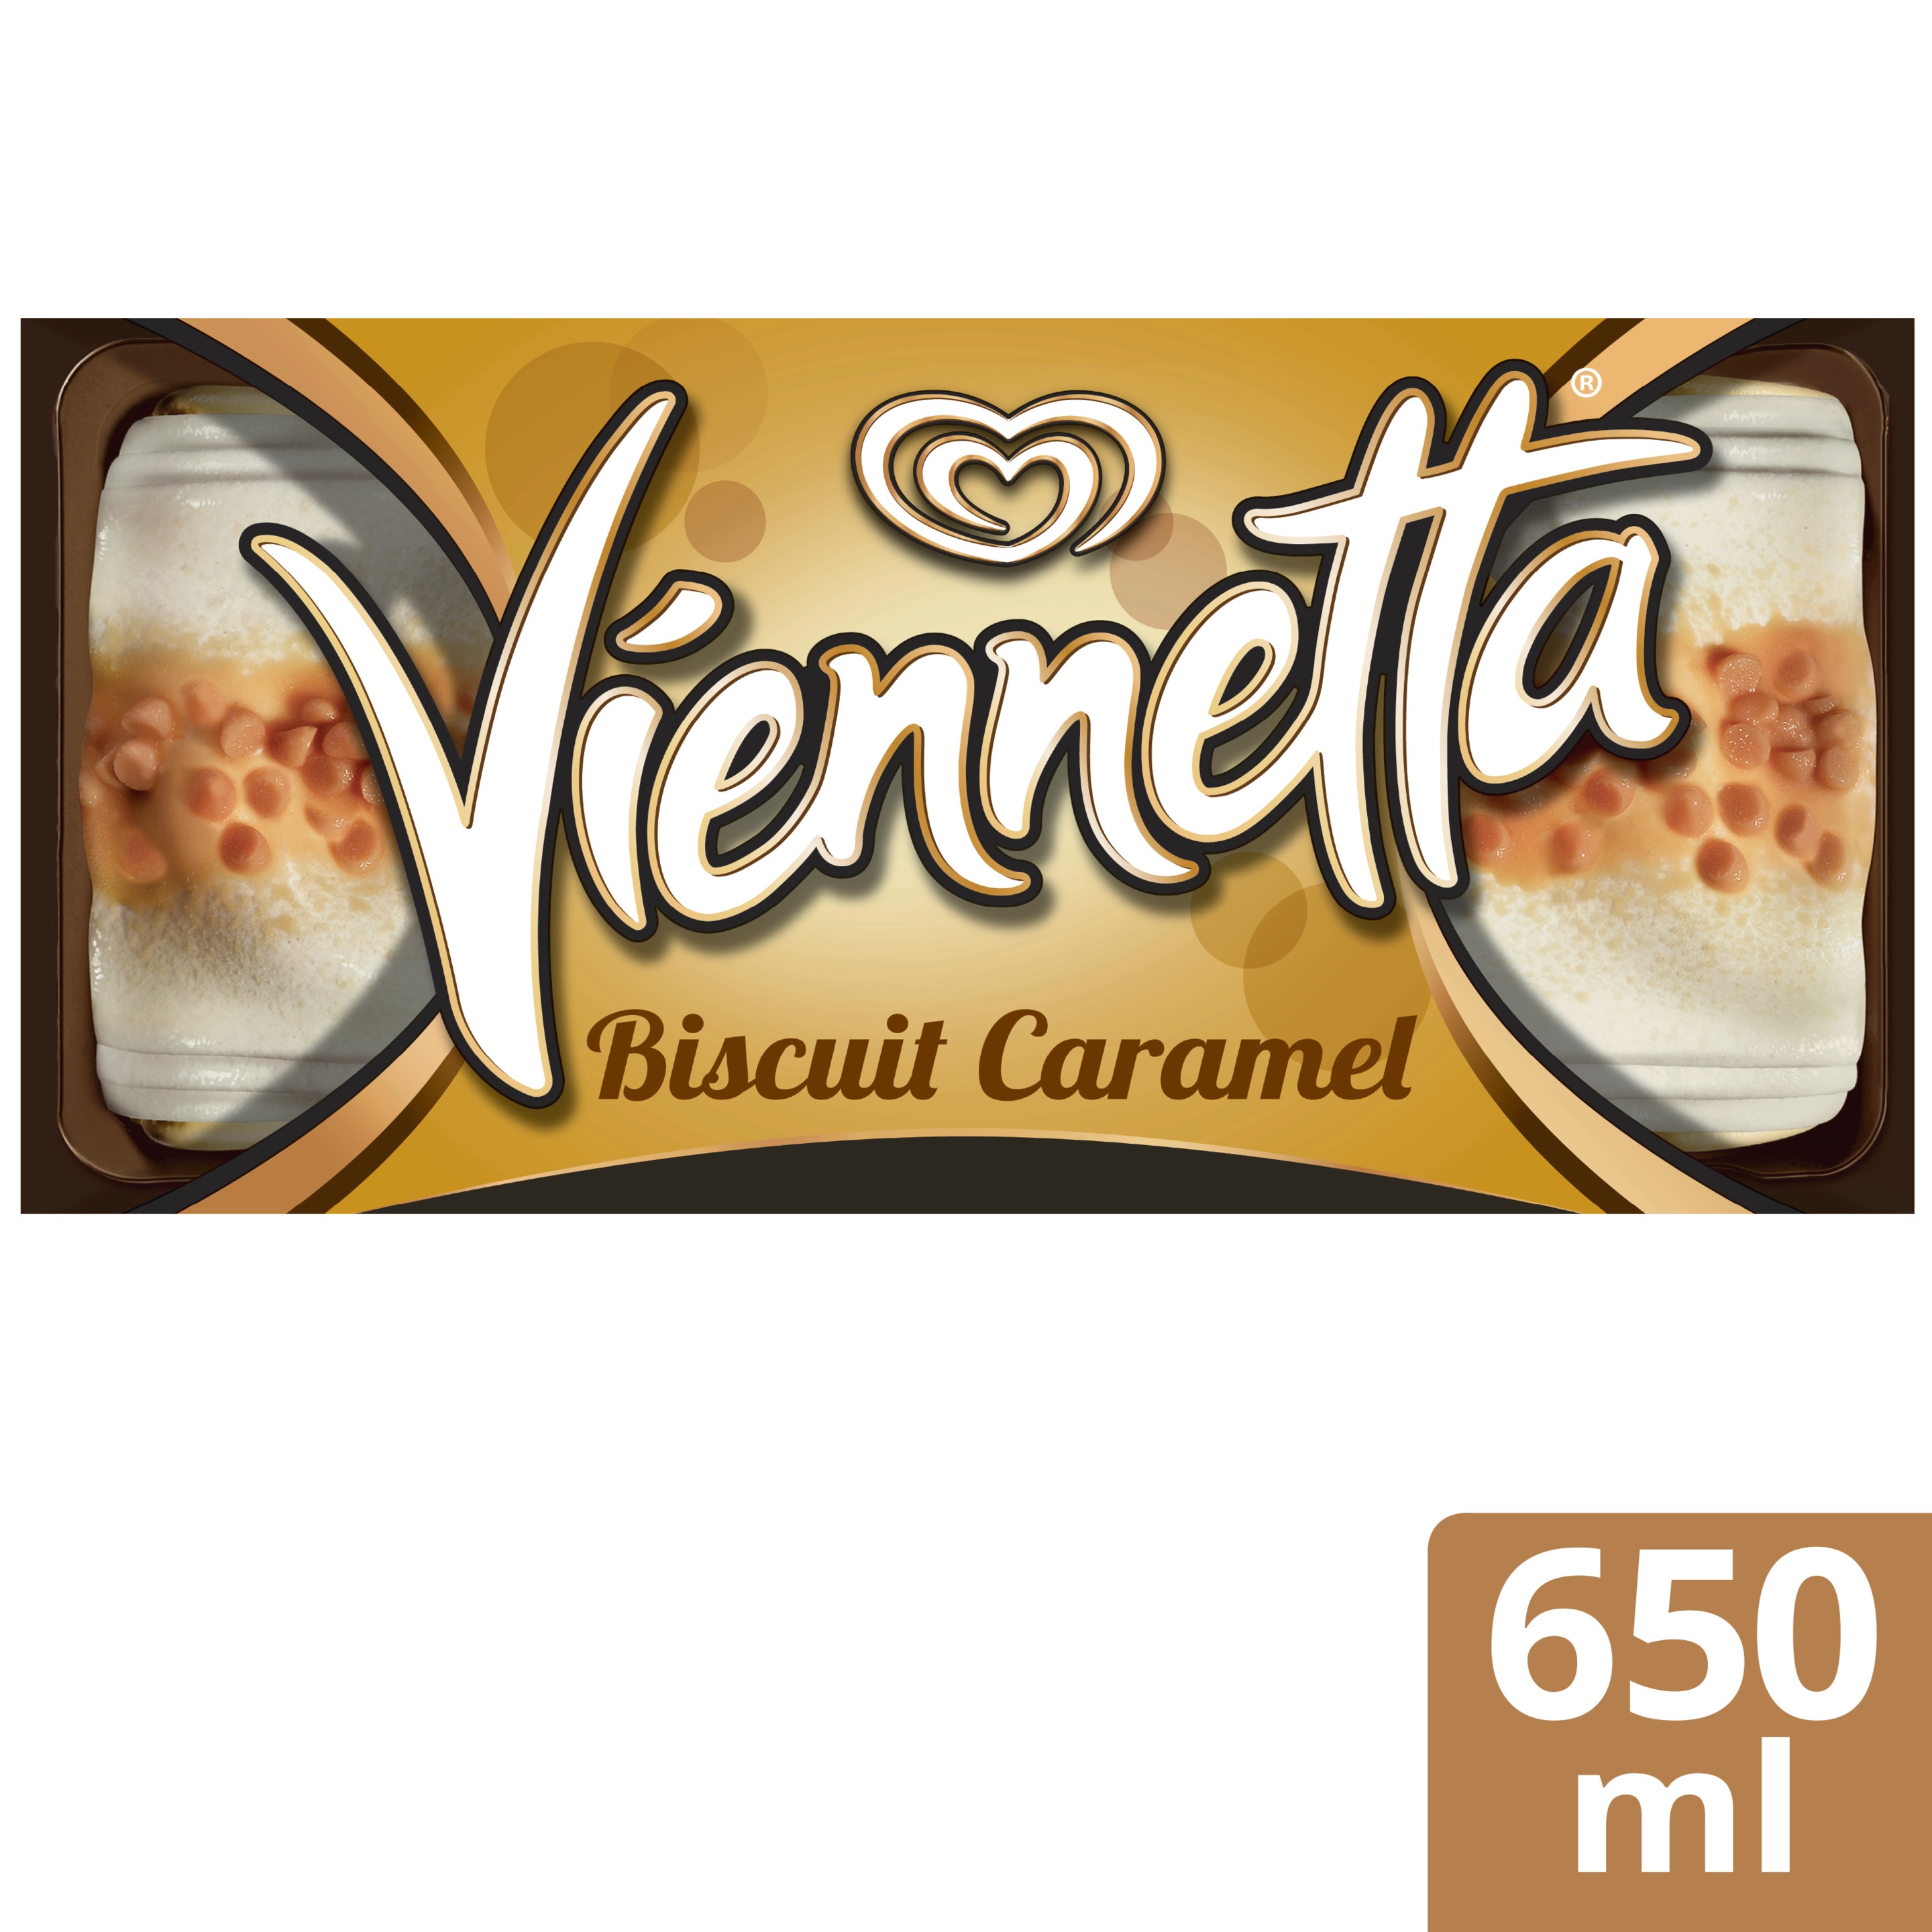 Viennetta Biscuit Caramel - Langnese Deutschland